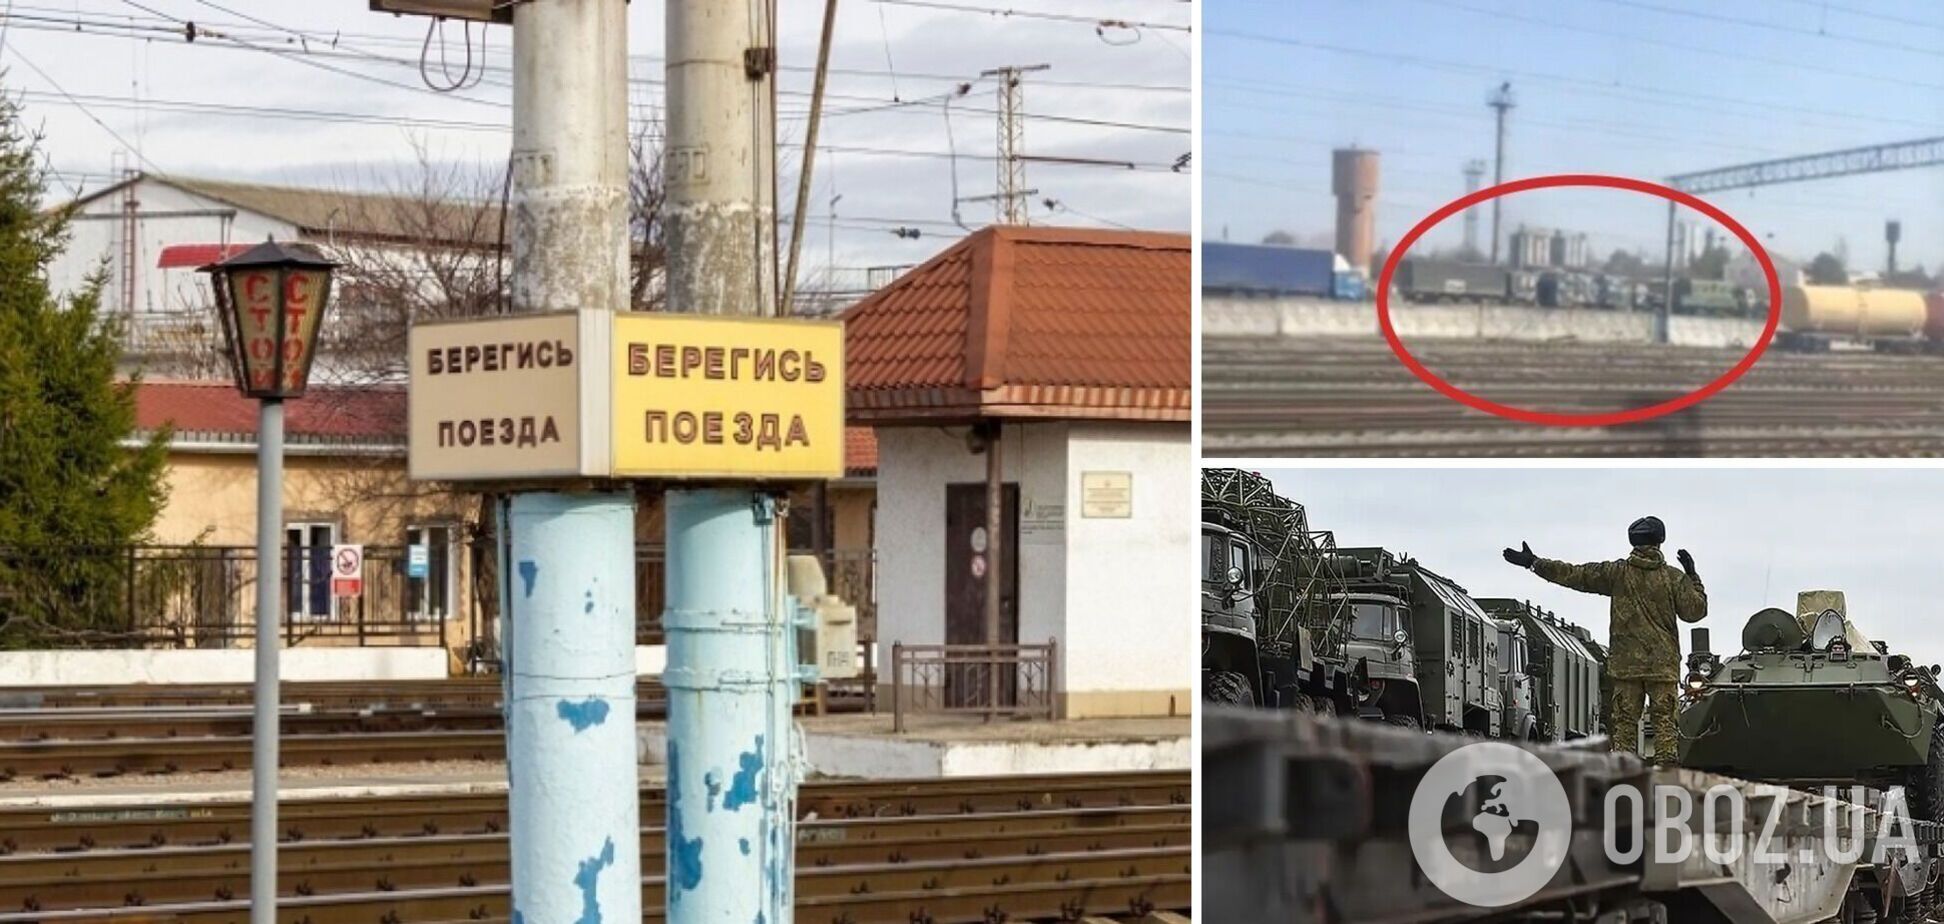 Далеко не уедет? 'Атеш' зафиксировал прибытие военной техники РФ в Симферополь и сделал намек. Фото